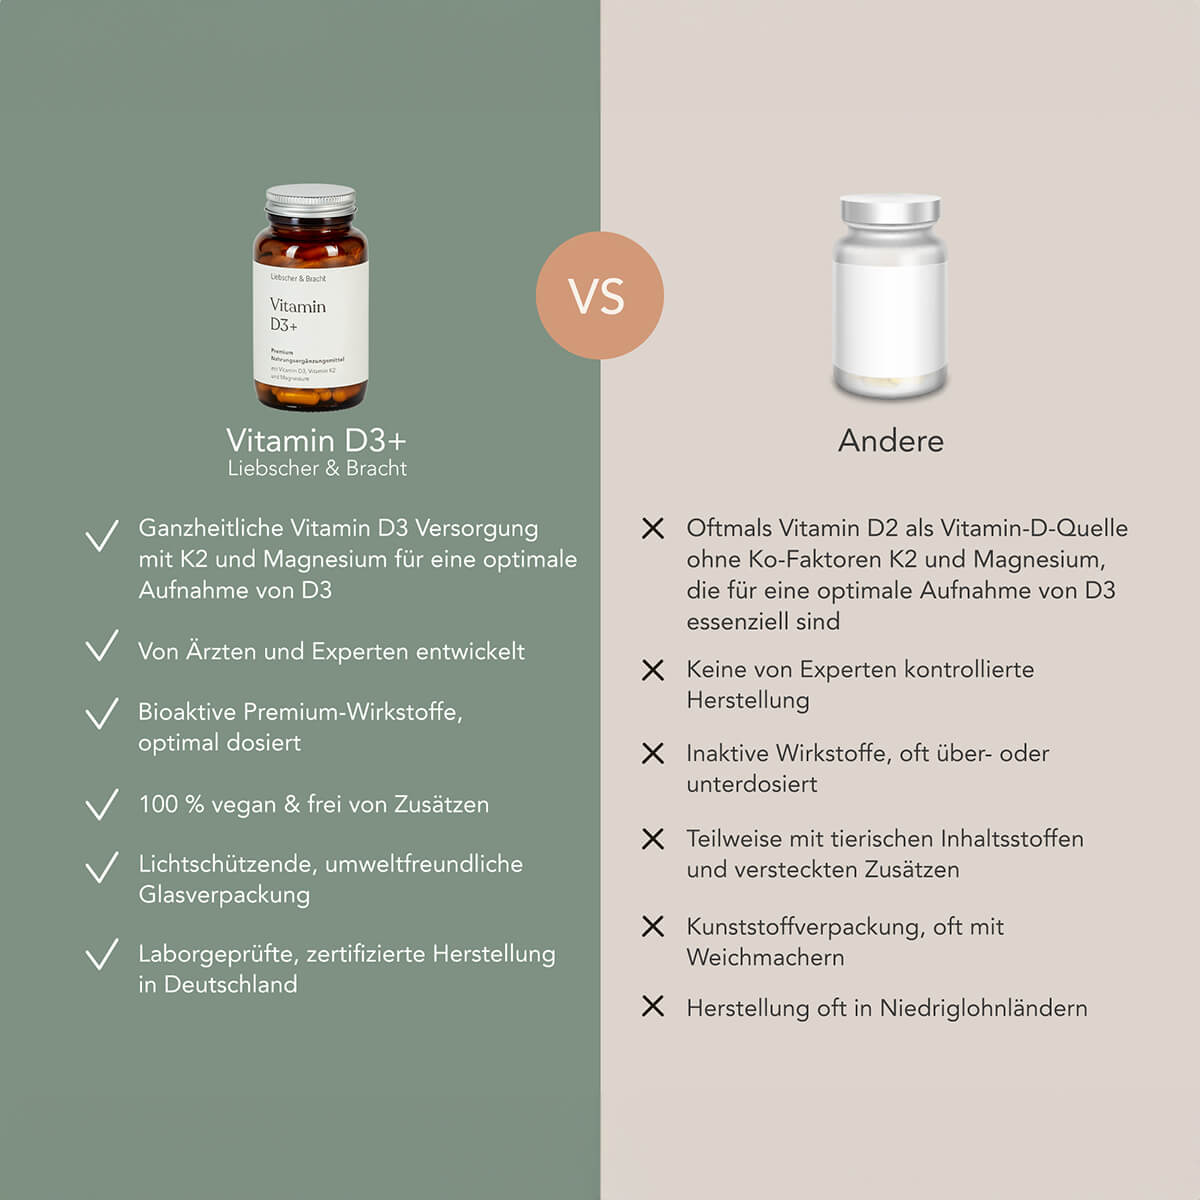 Vergleichsbild: Vitamin D3+  Nahrungsergänzungsmittel von Liebscher & Bracht im Vergleich zu anderen Nahrungsergänzungsmitteln.